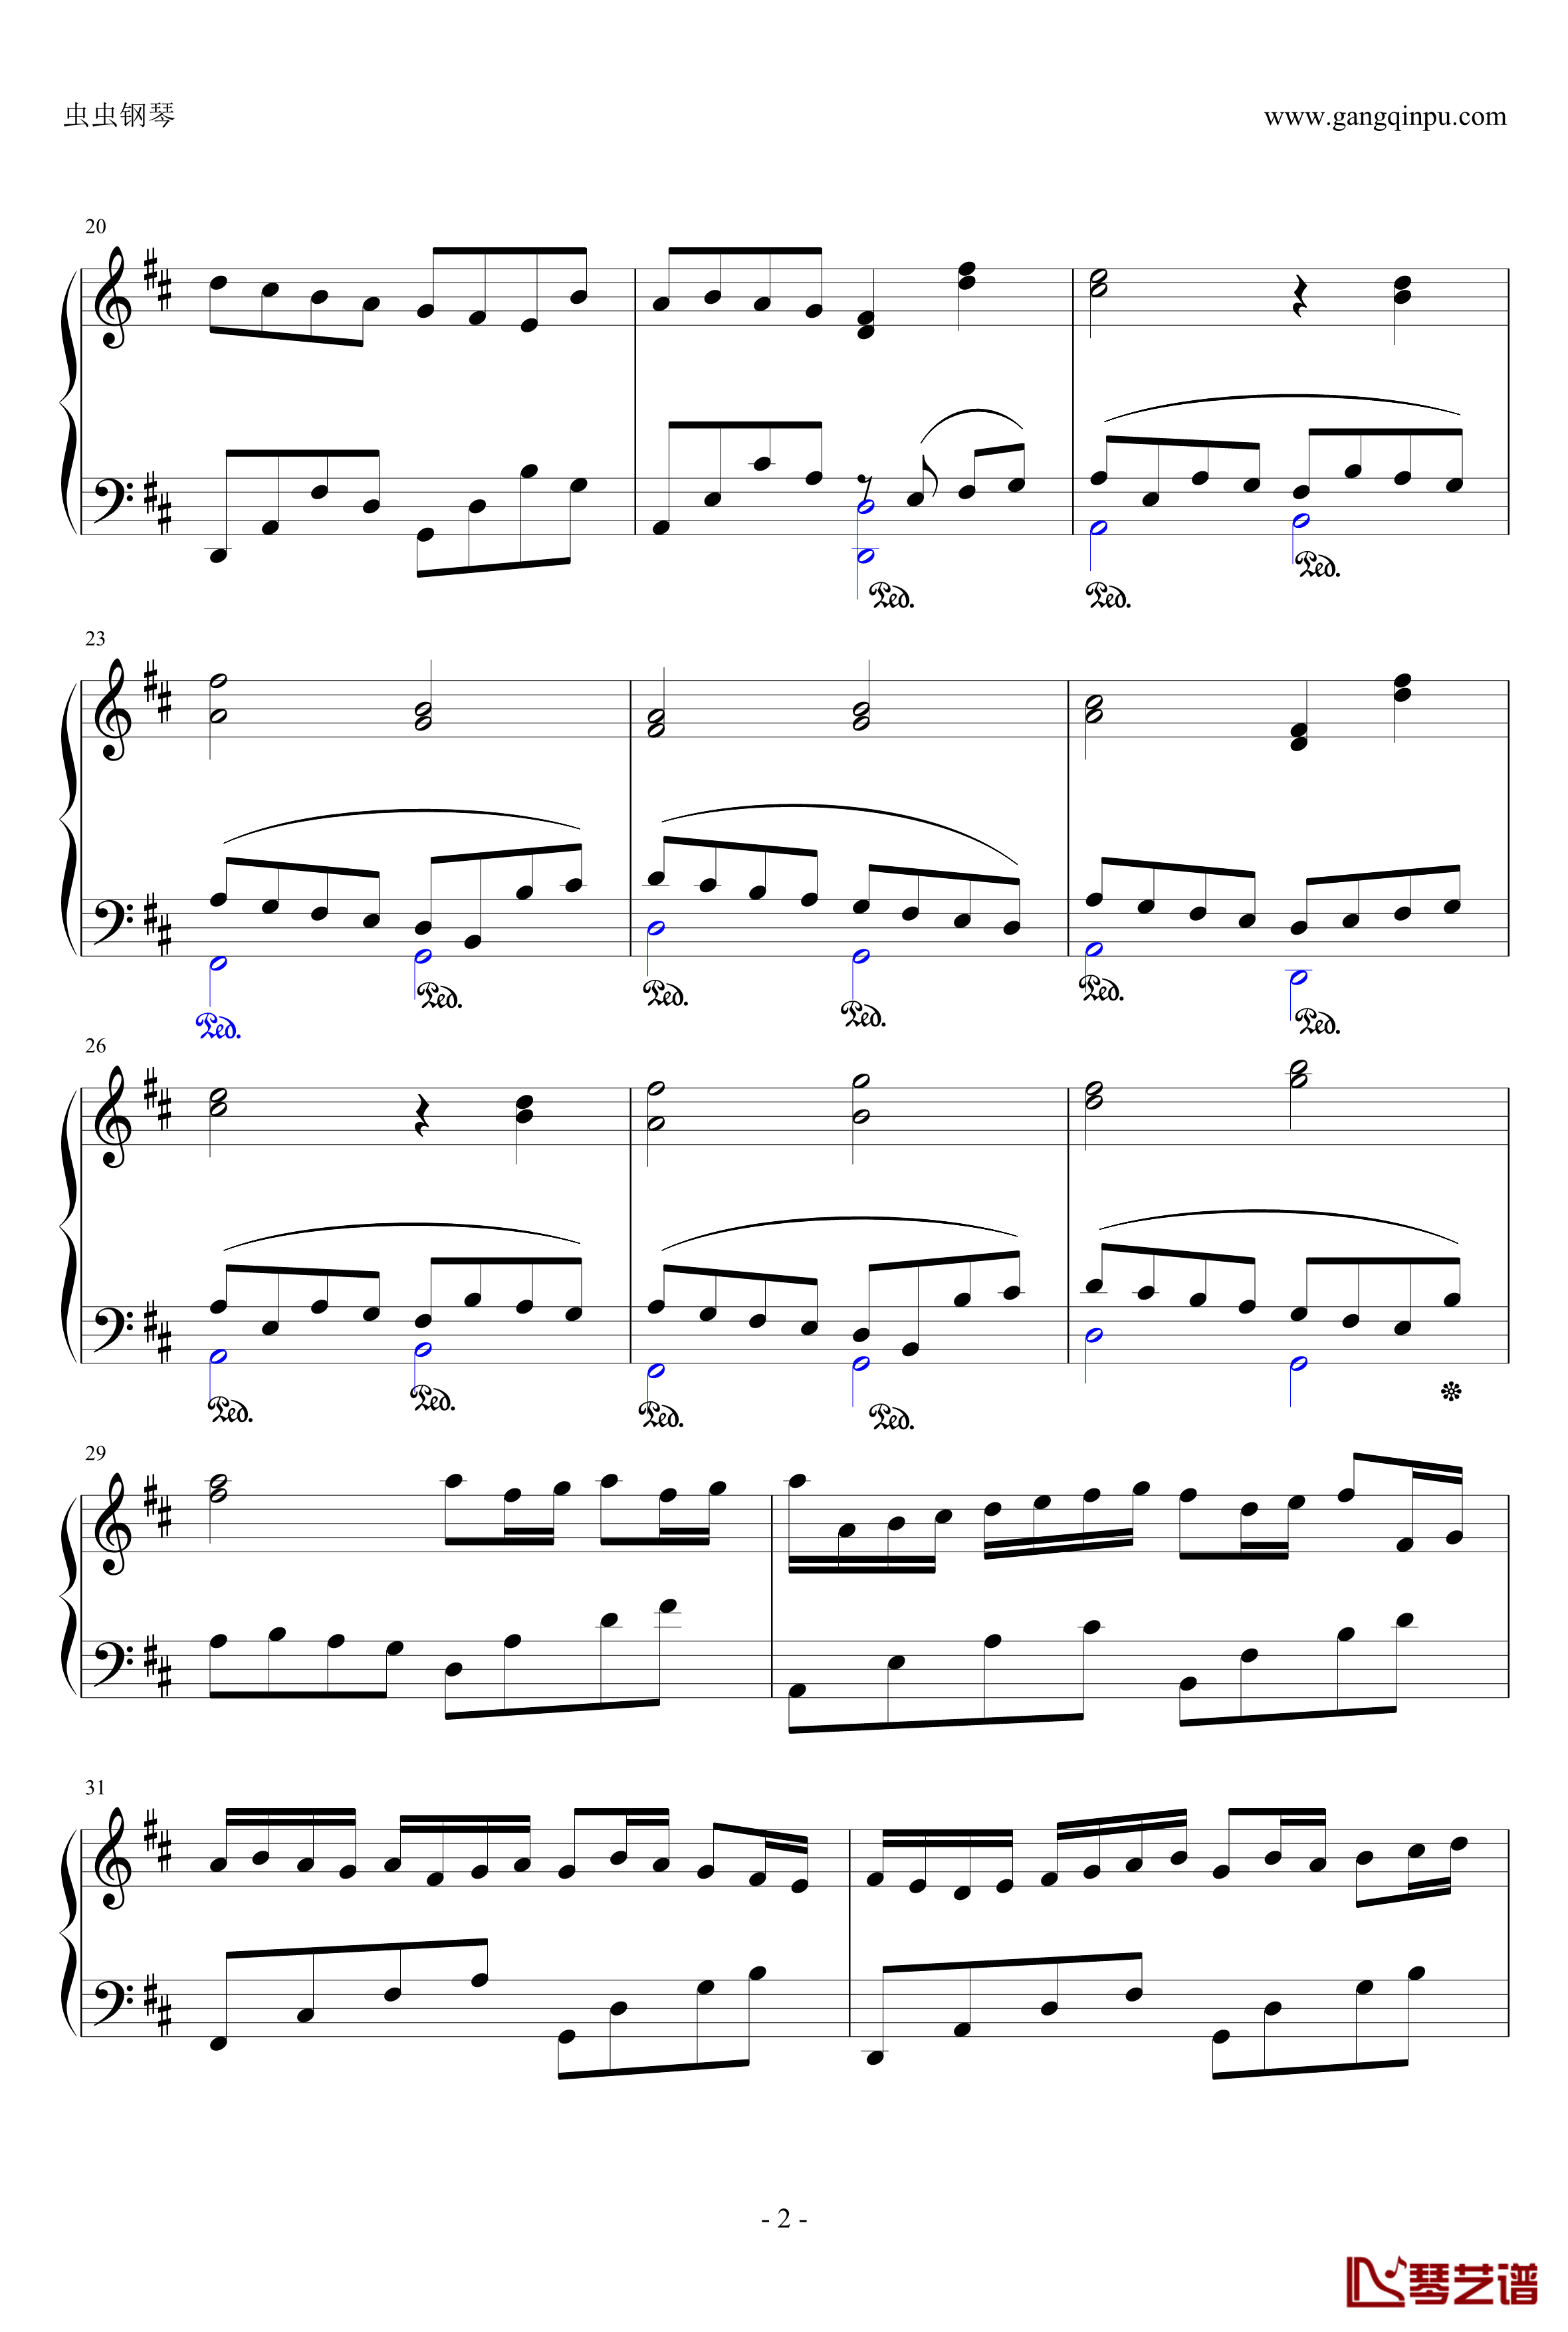 卡农：大爱人间钢琴谱-完整版-帕赫贝尔-Pachelbel2